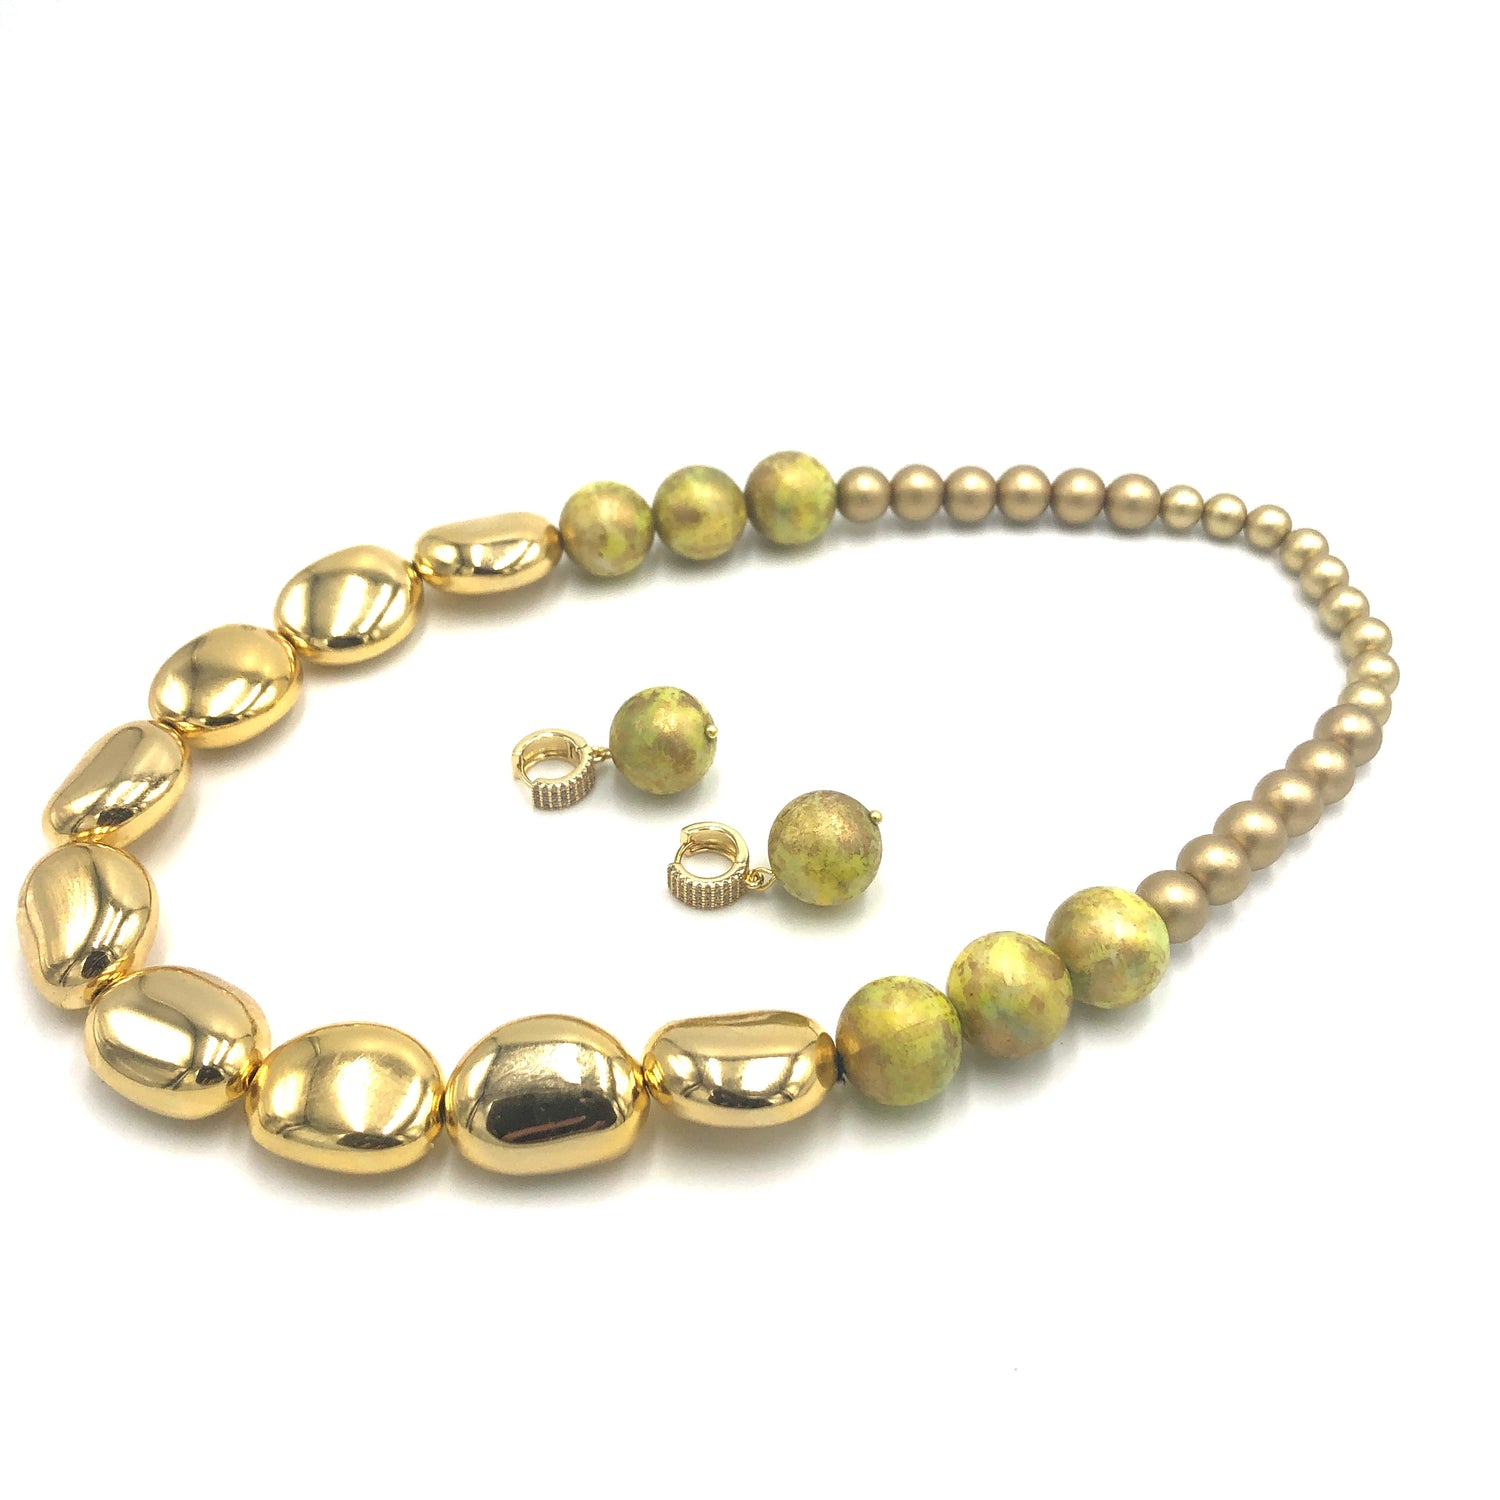 Golden Pebble Stretch Bauble Necklace - Shortie *